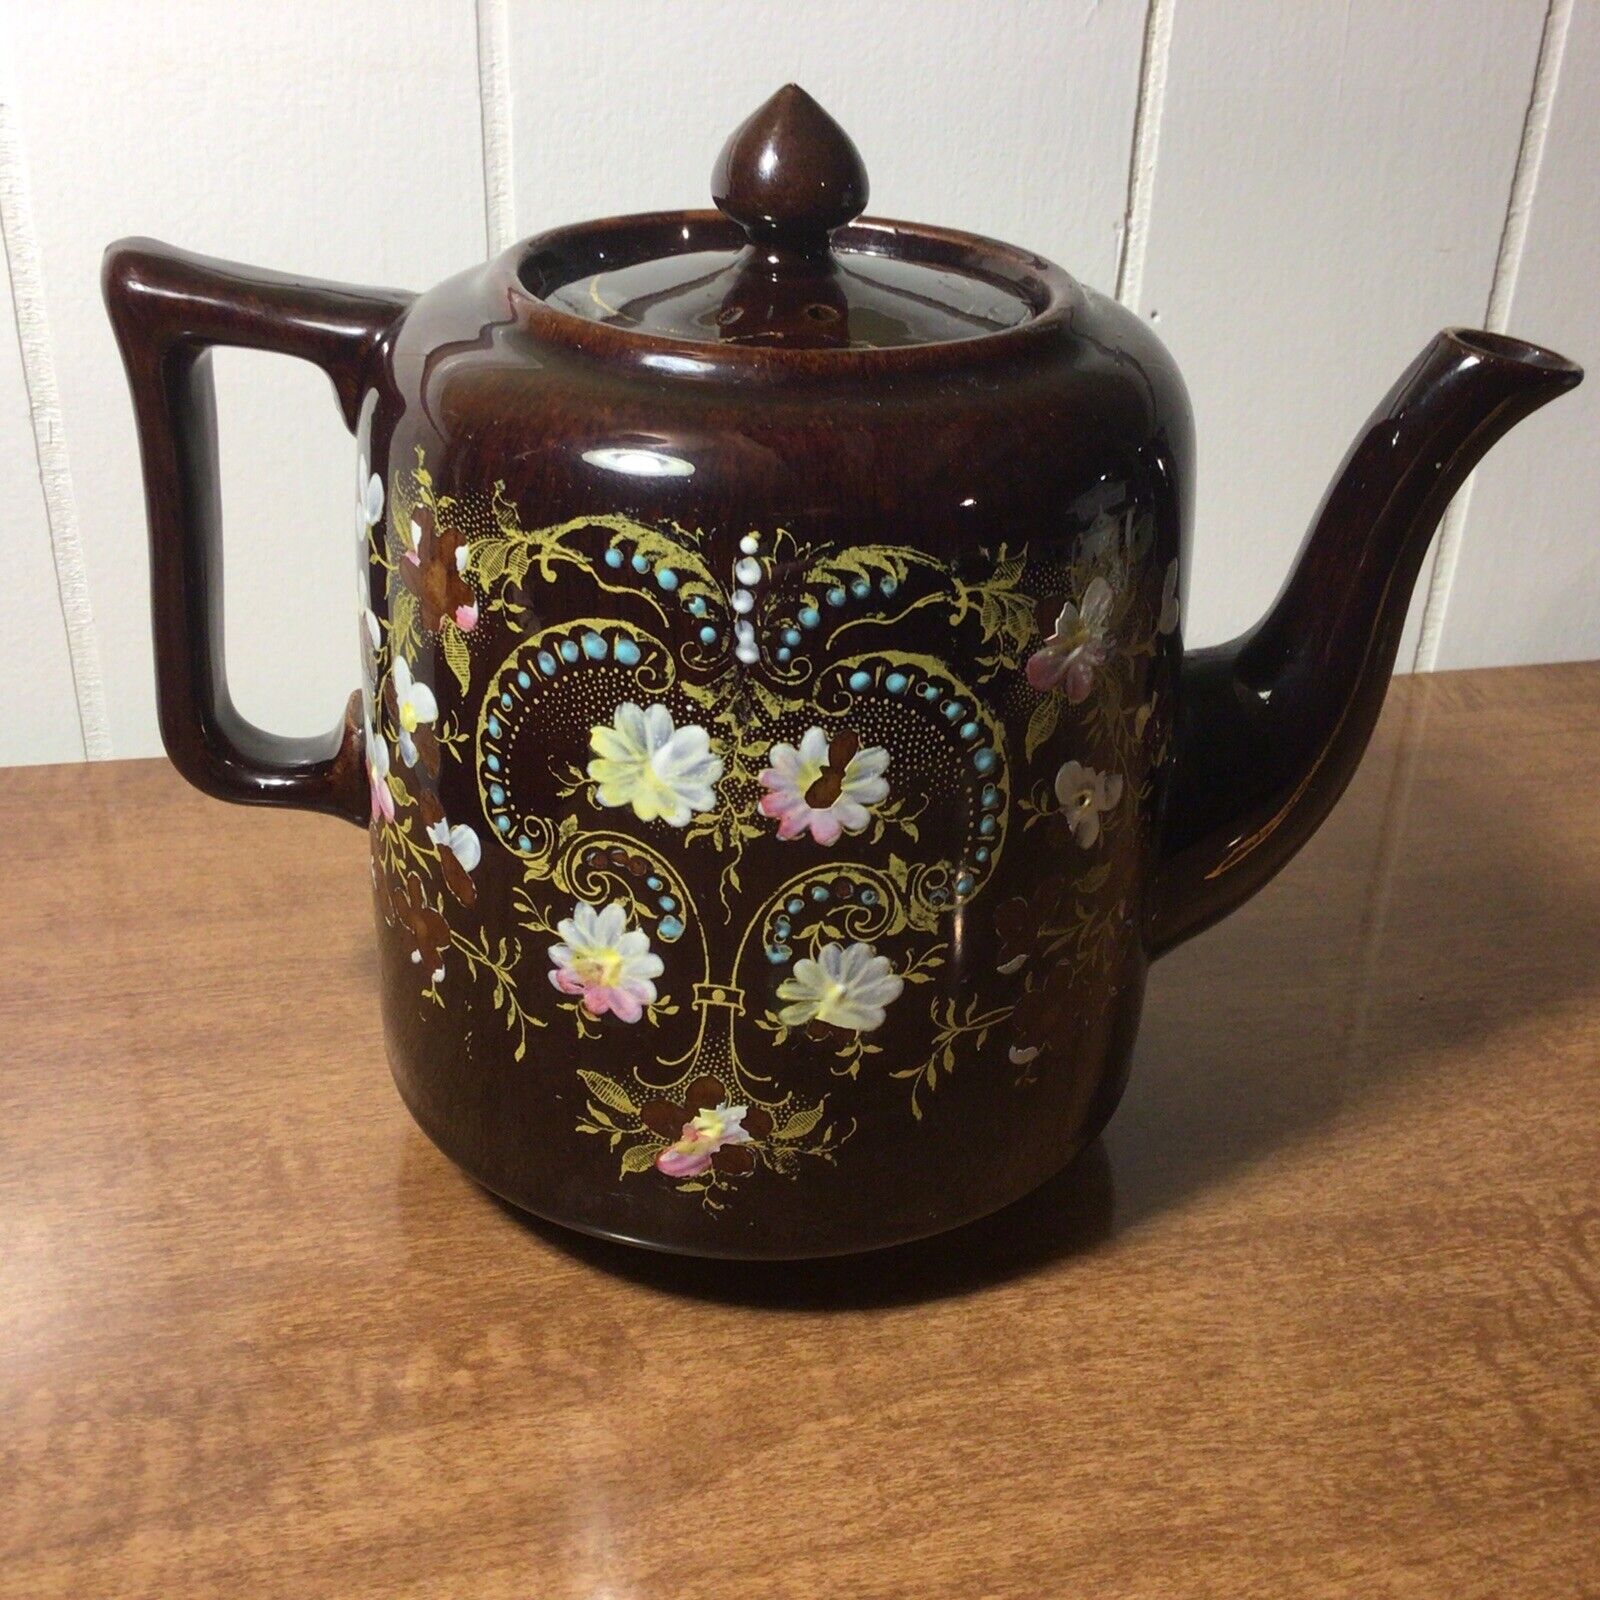 ATQ ( Circa 1887-1912),S.J.B.,(Samuel Johnson Burslem),Ornate Teapot, England